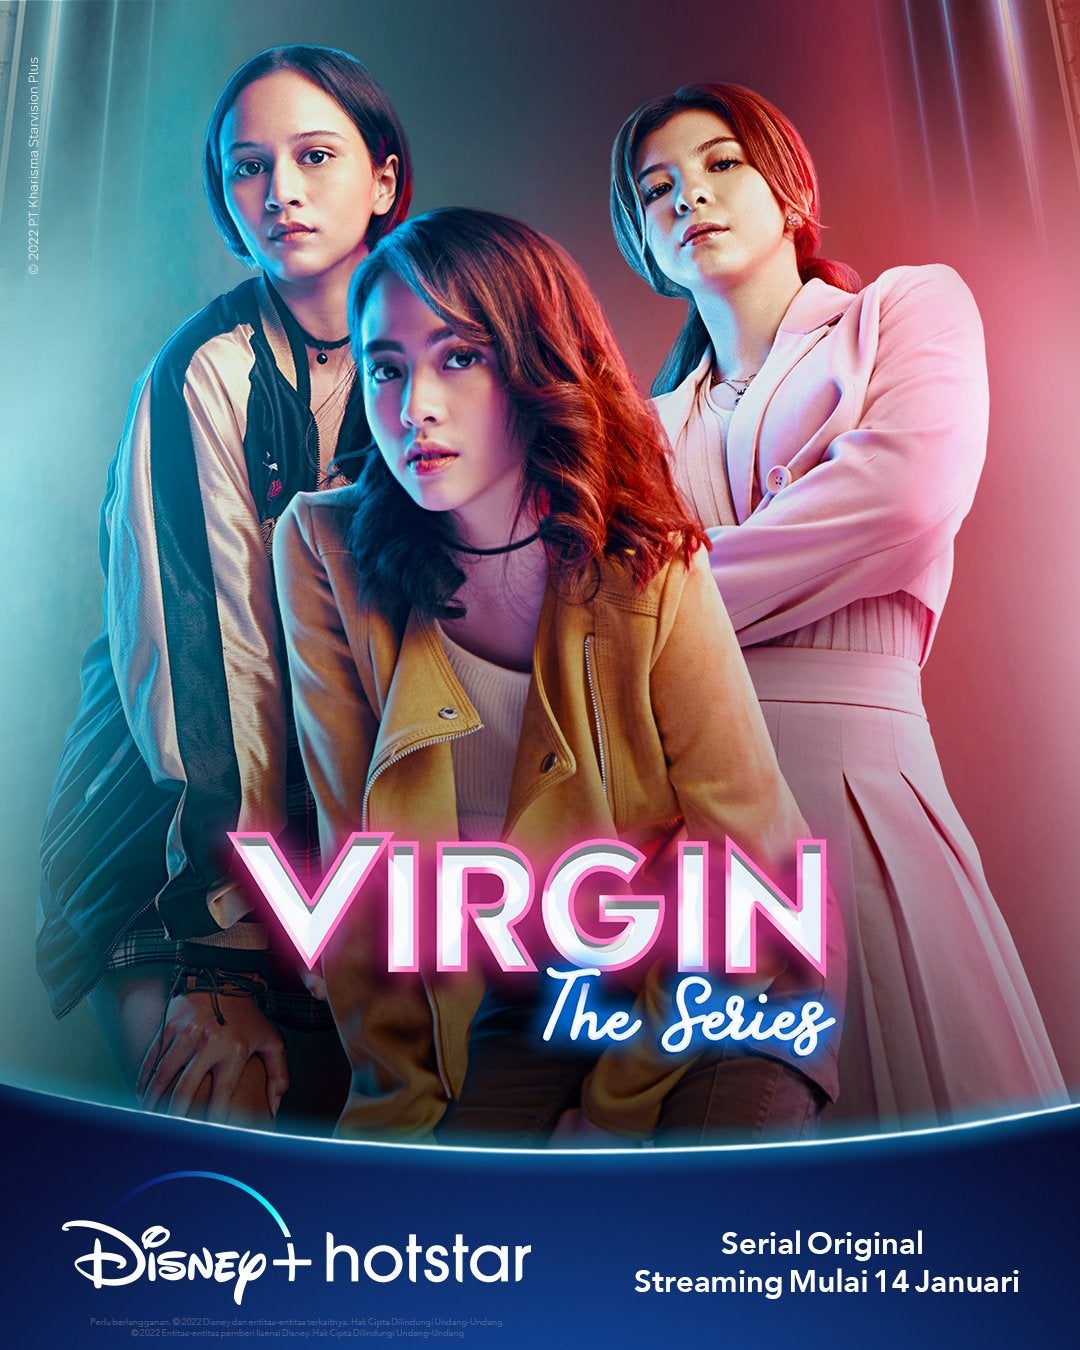 TV ratings for Virgin The Series in Turkey. Disney+ TV series